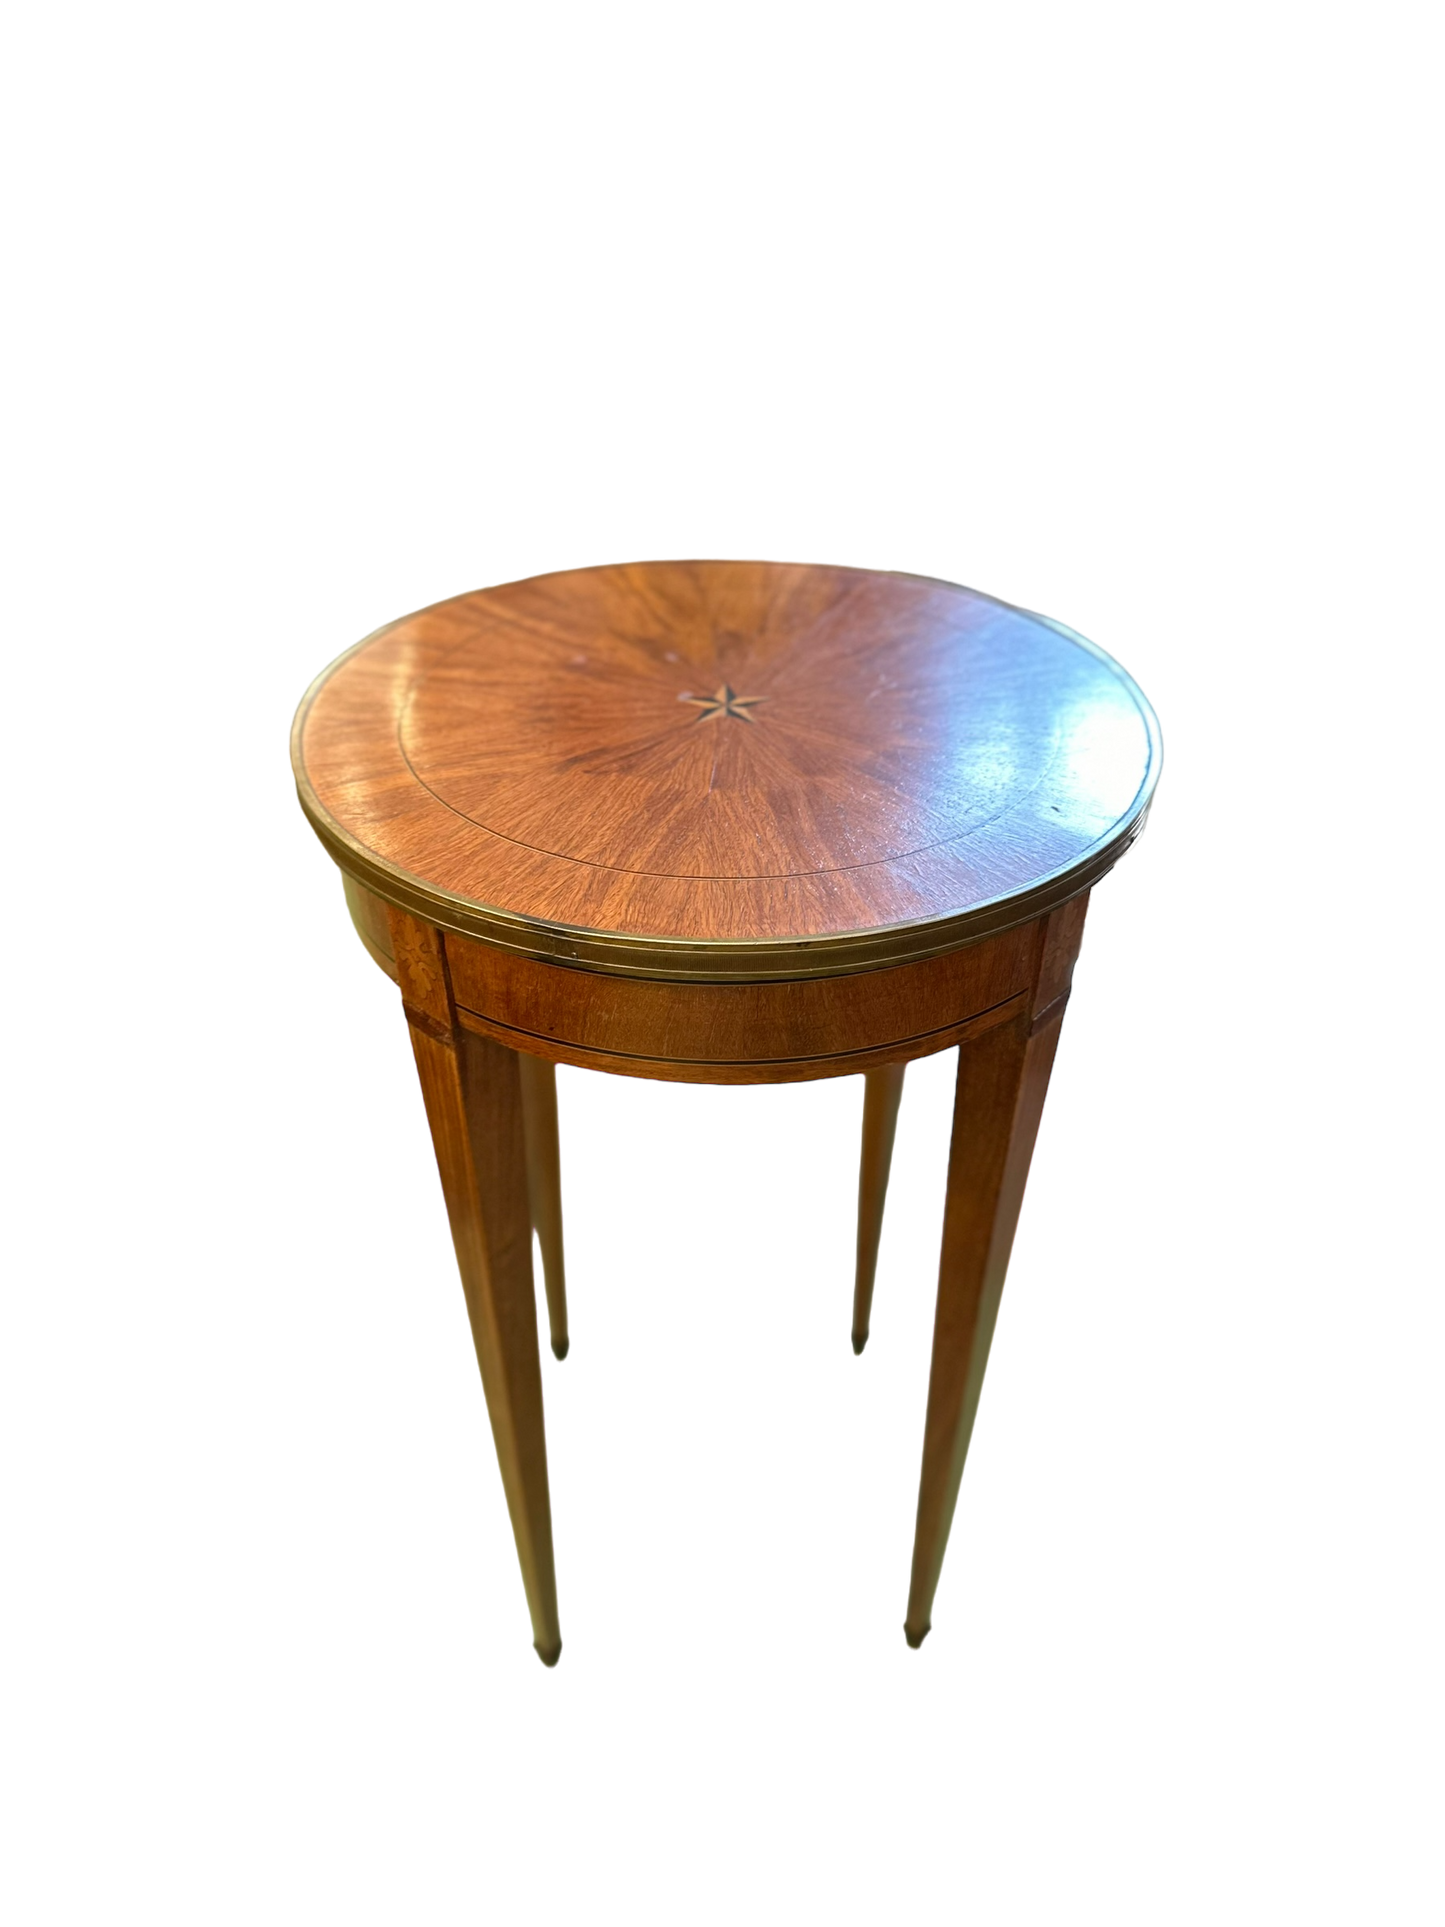 Antique Louis XVI Style Bouilloute Table / Wooden